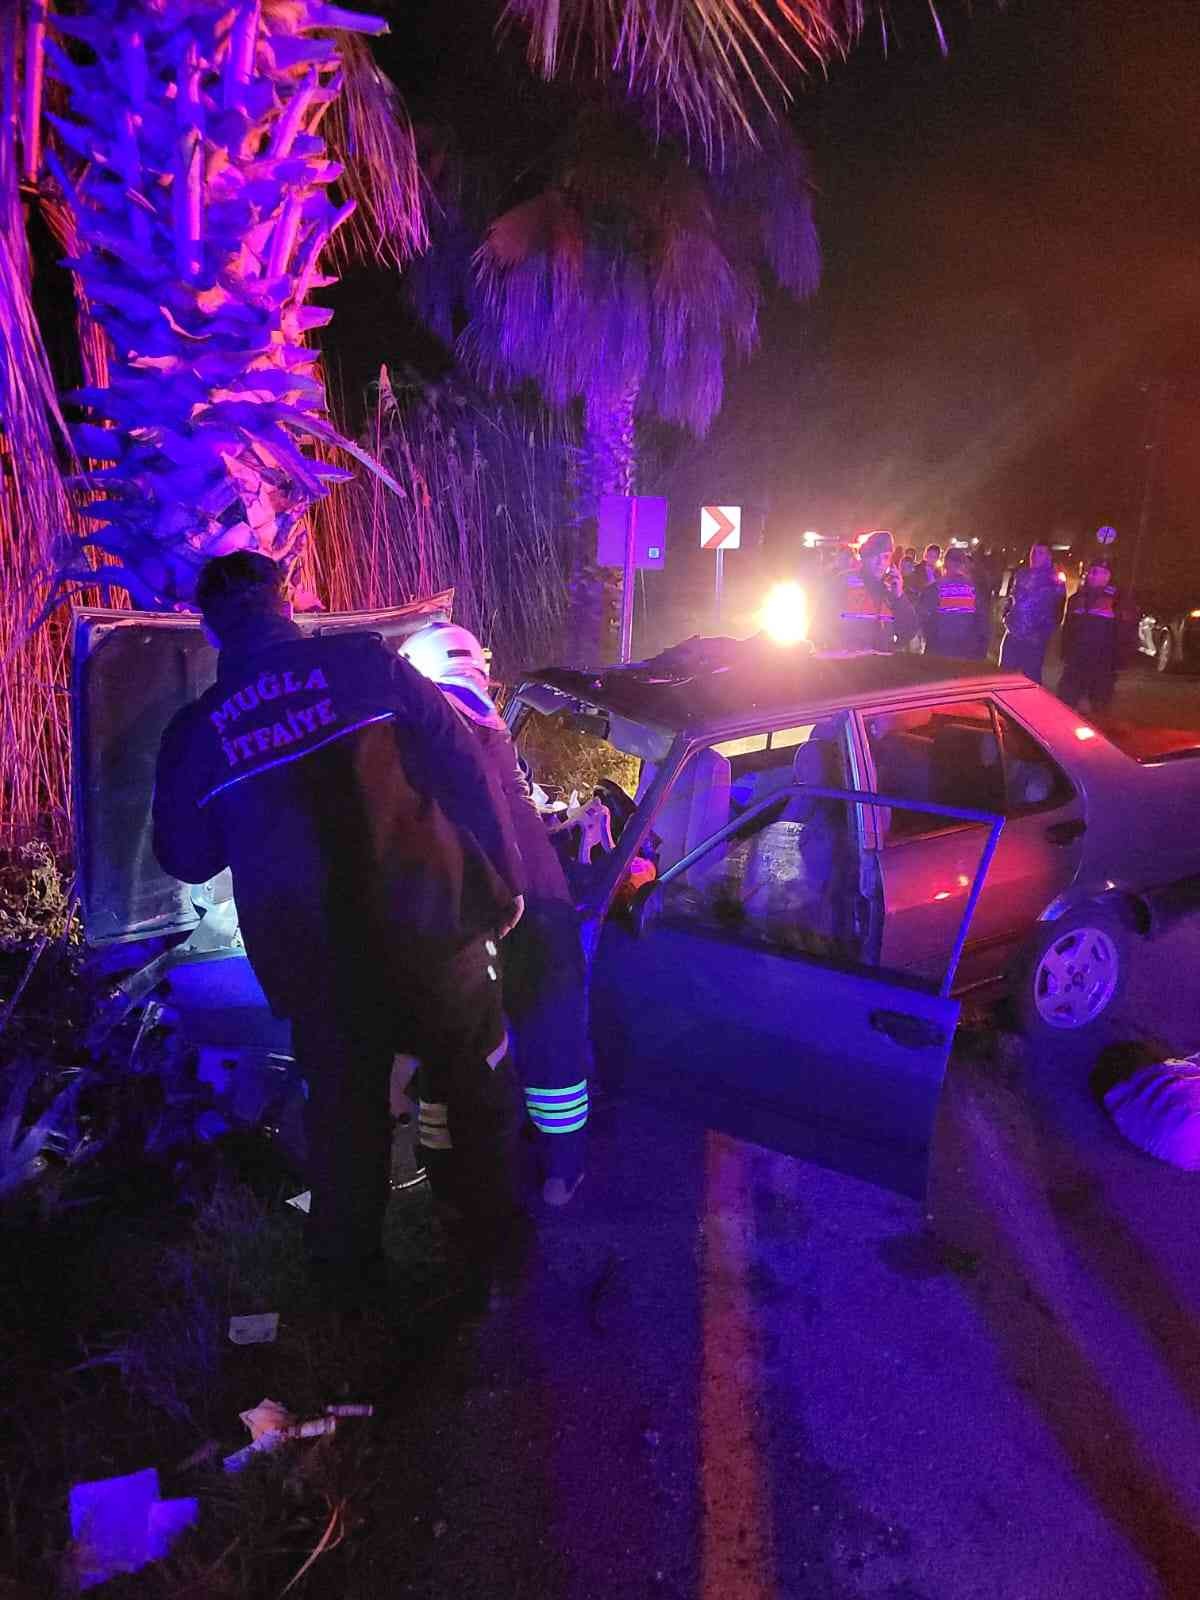 Ortaca’da trafik kazası: 1 ölü